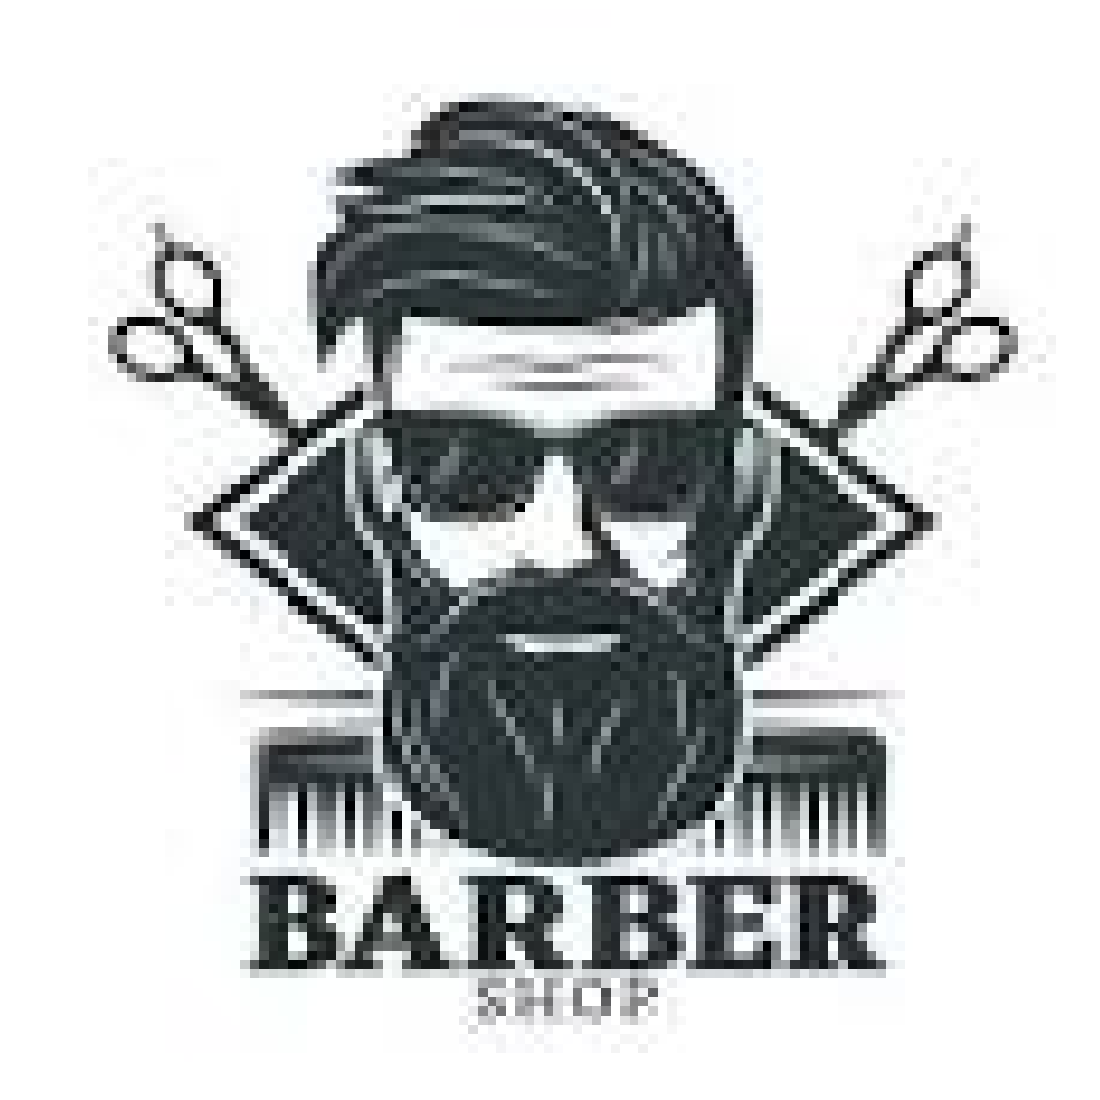 haircut logo